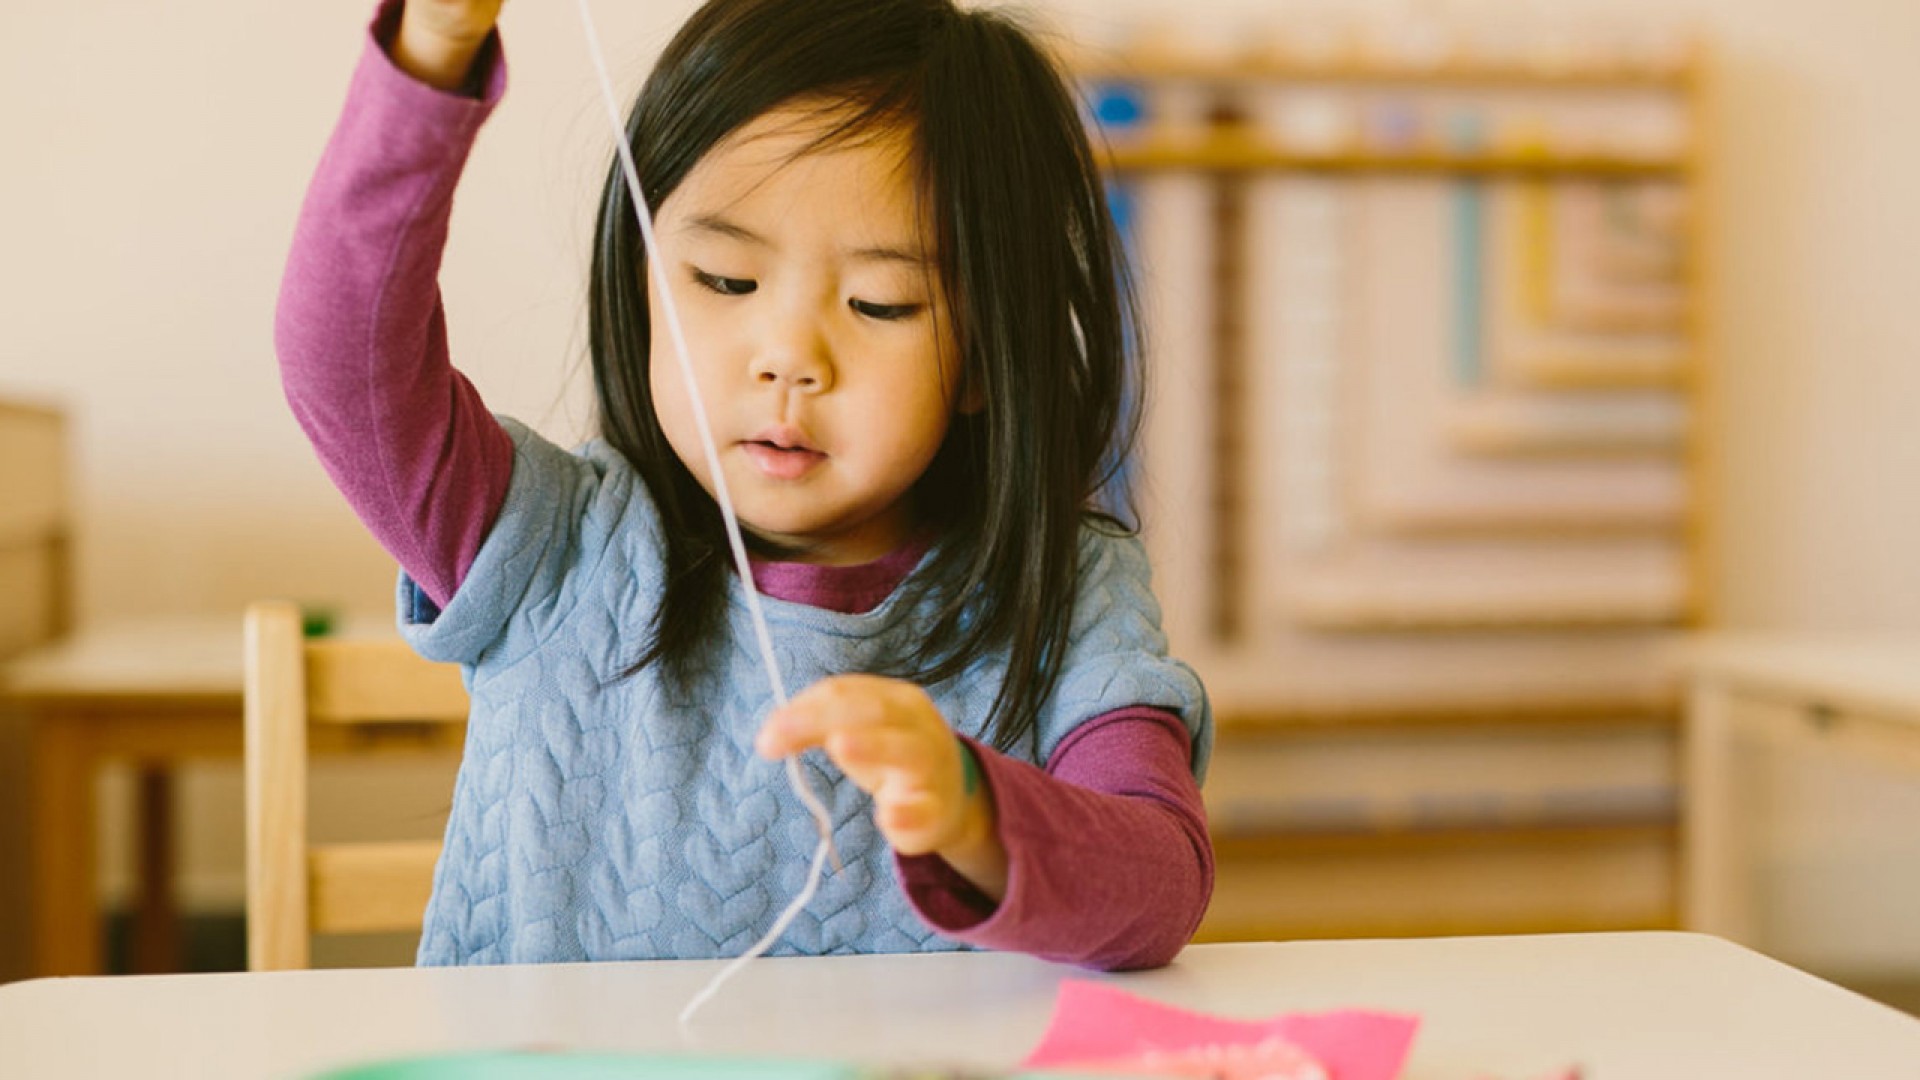 Phương pháp giáo dục Montessori: Tìm hiểu những ưu nhược điểm phụ huynh cần biết